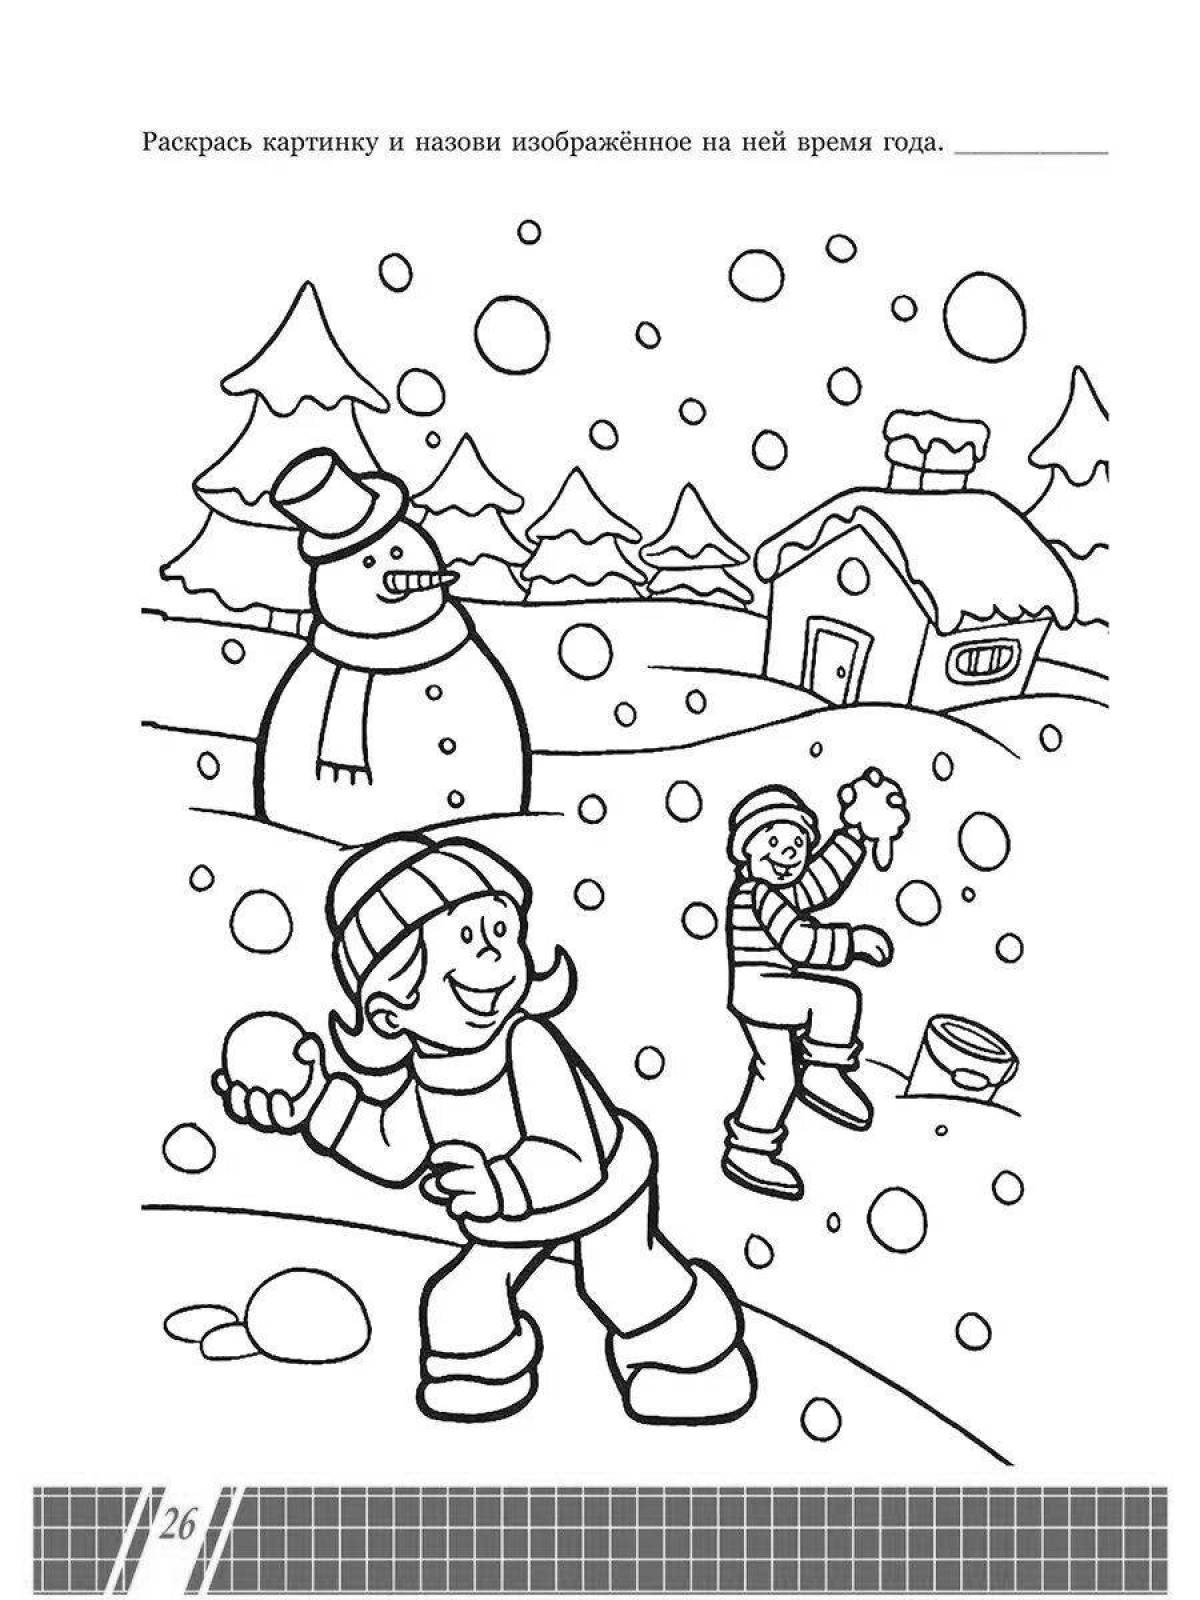 Радостная раскраска для детей 6 лет зима